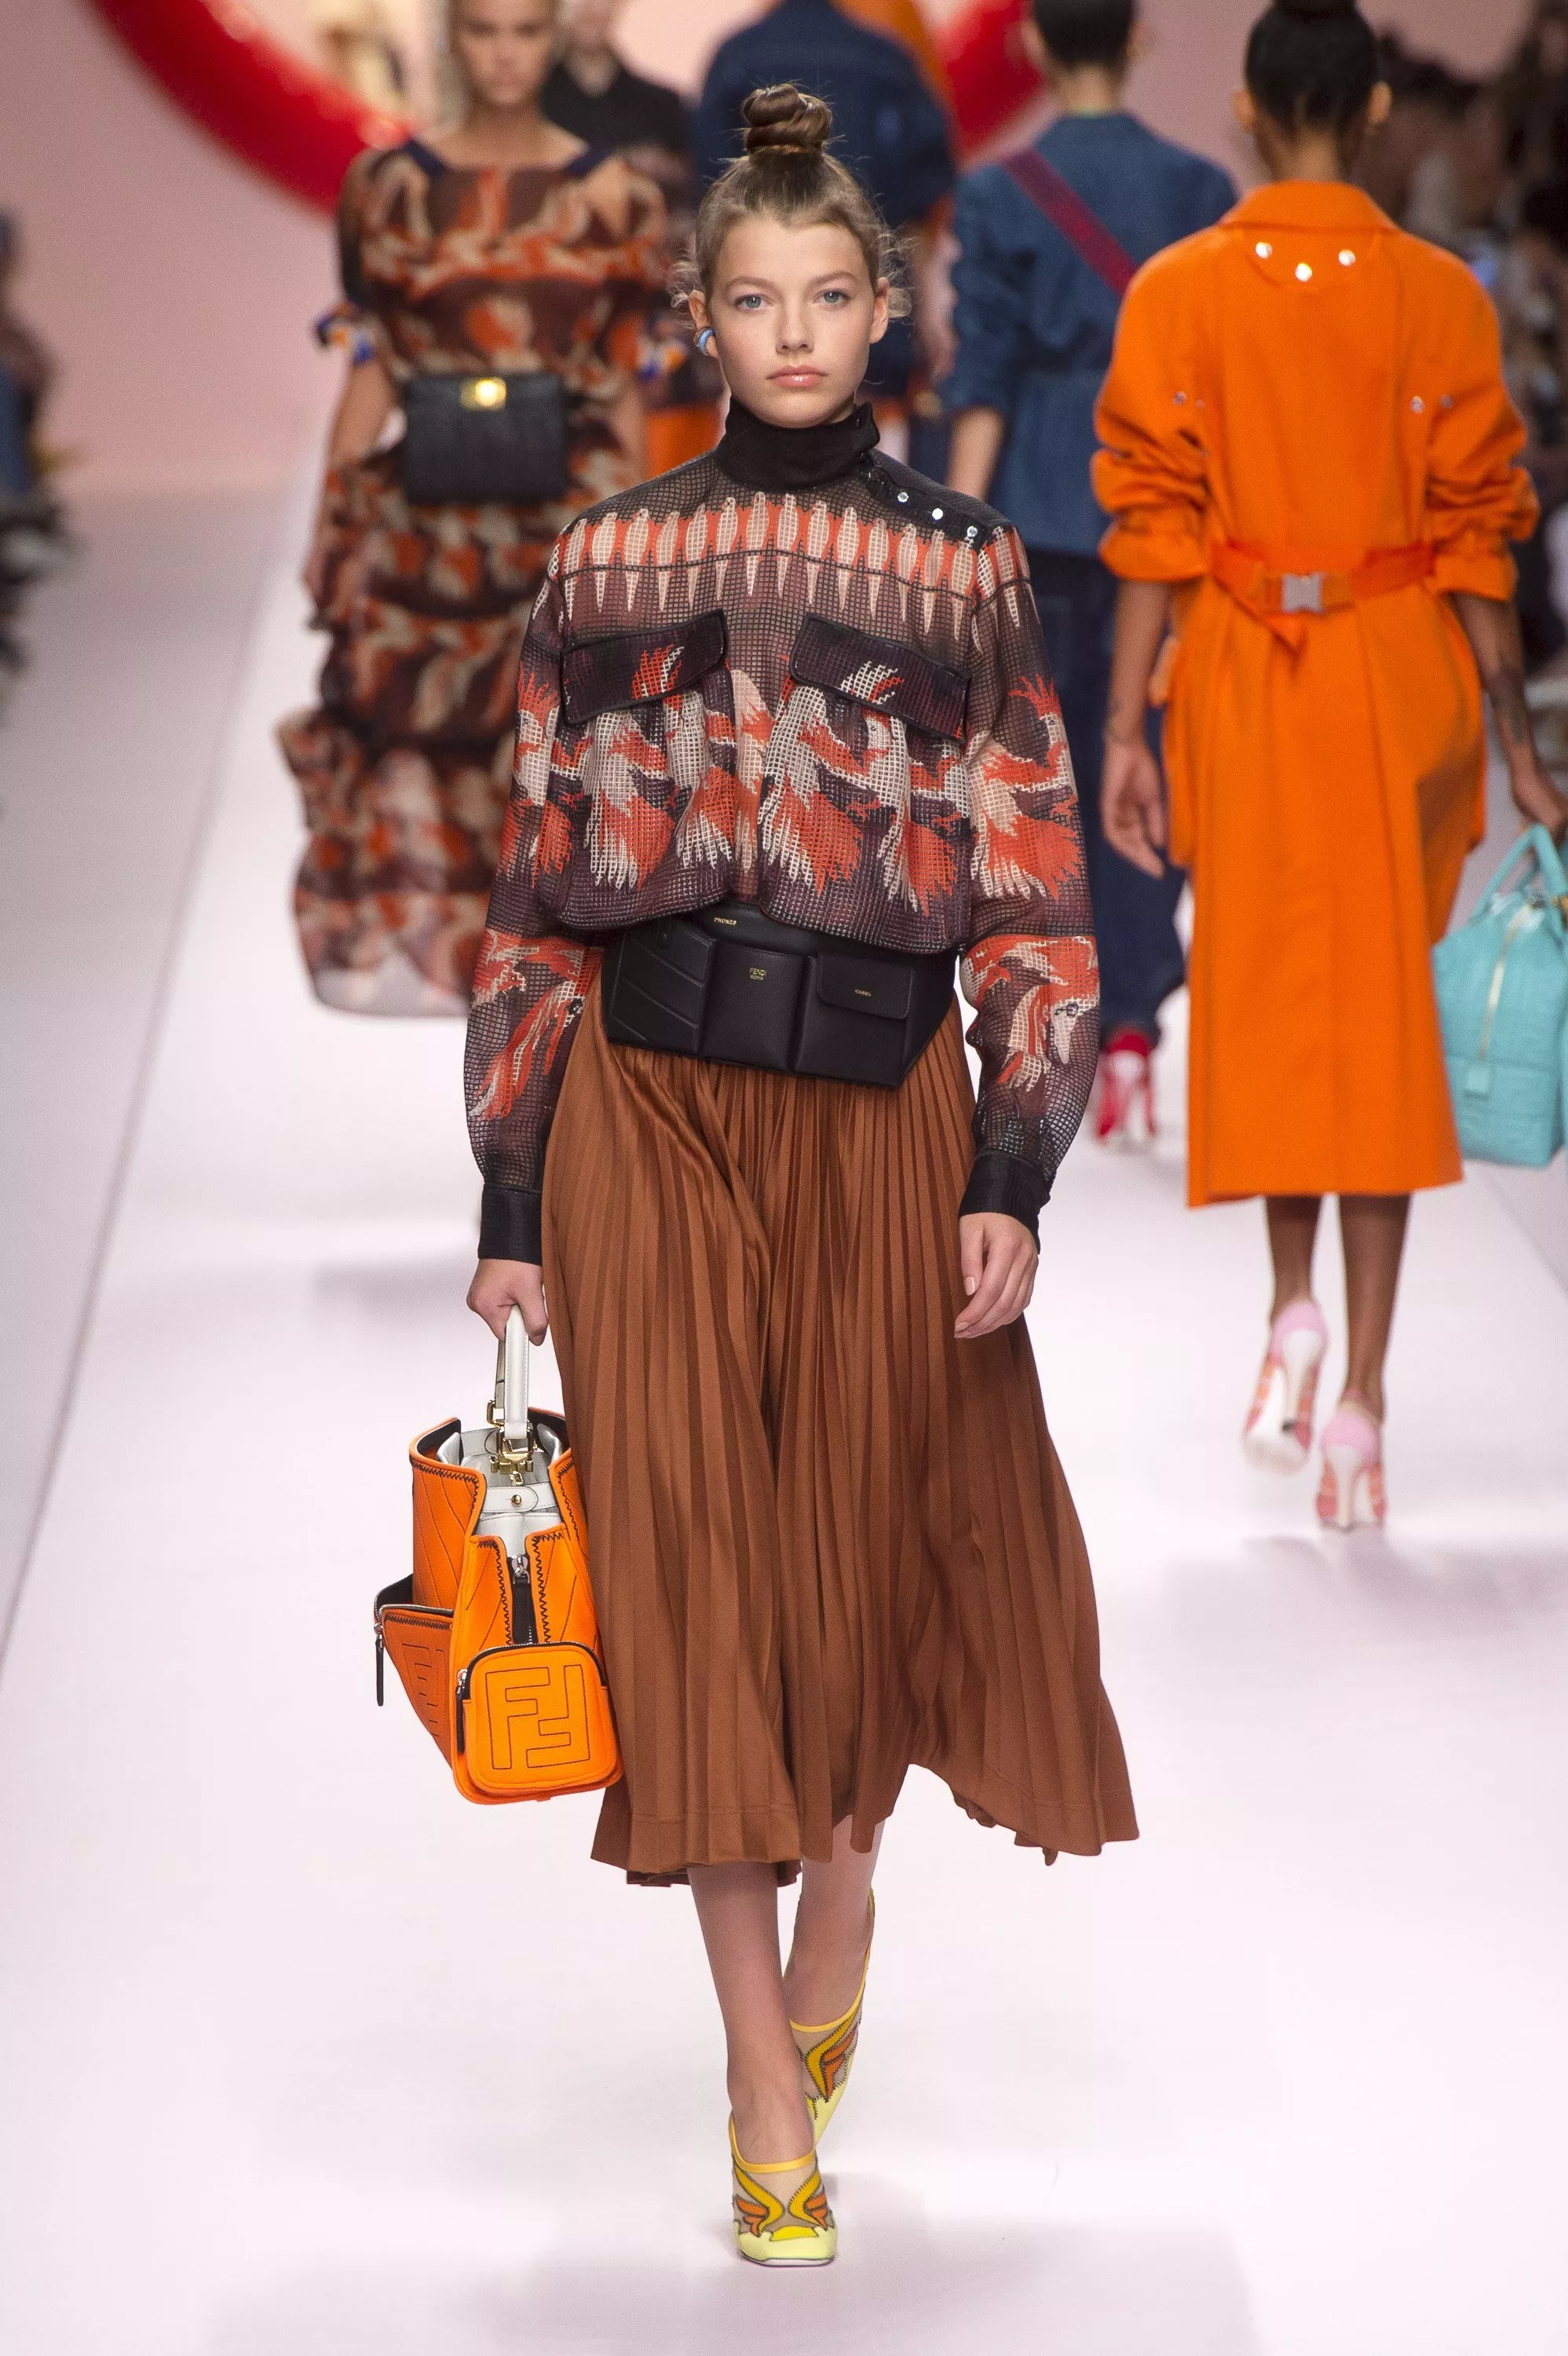 عرض Fendi لربيع 2019 ضمن أسبوع الموضة في ميلانو: جيب هائلة وأسلوب أقرب إلى واقع المرأة المشغولة